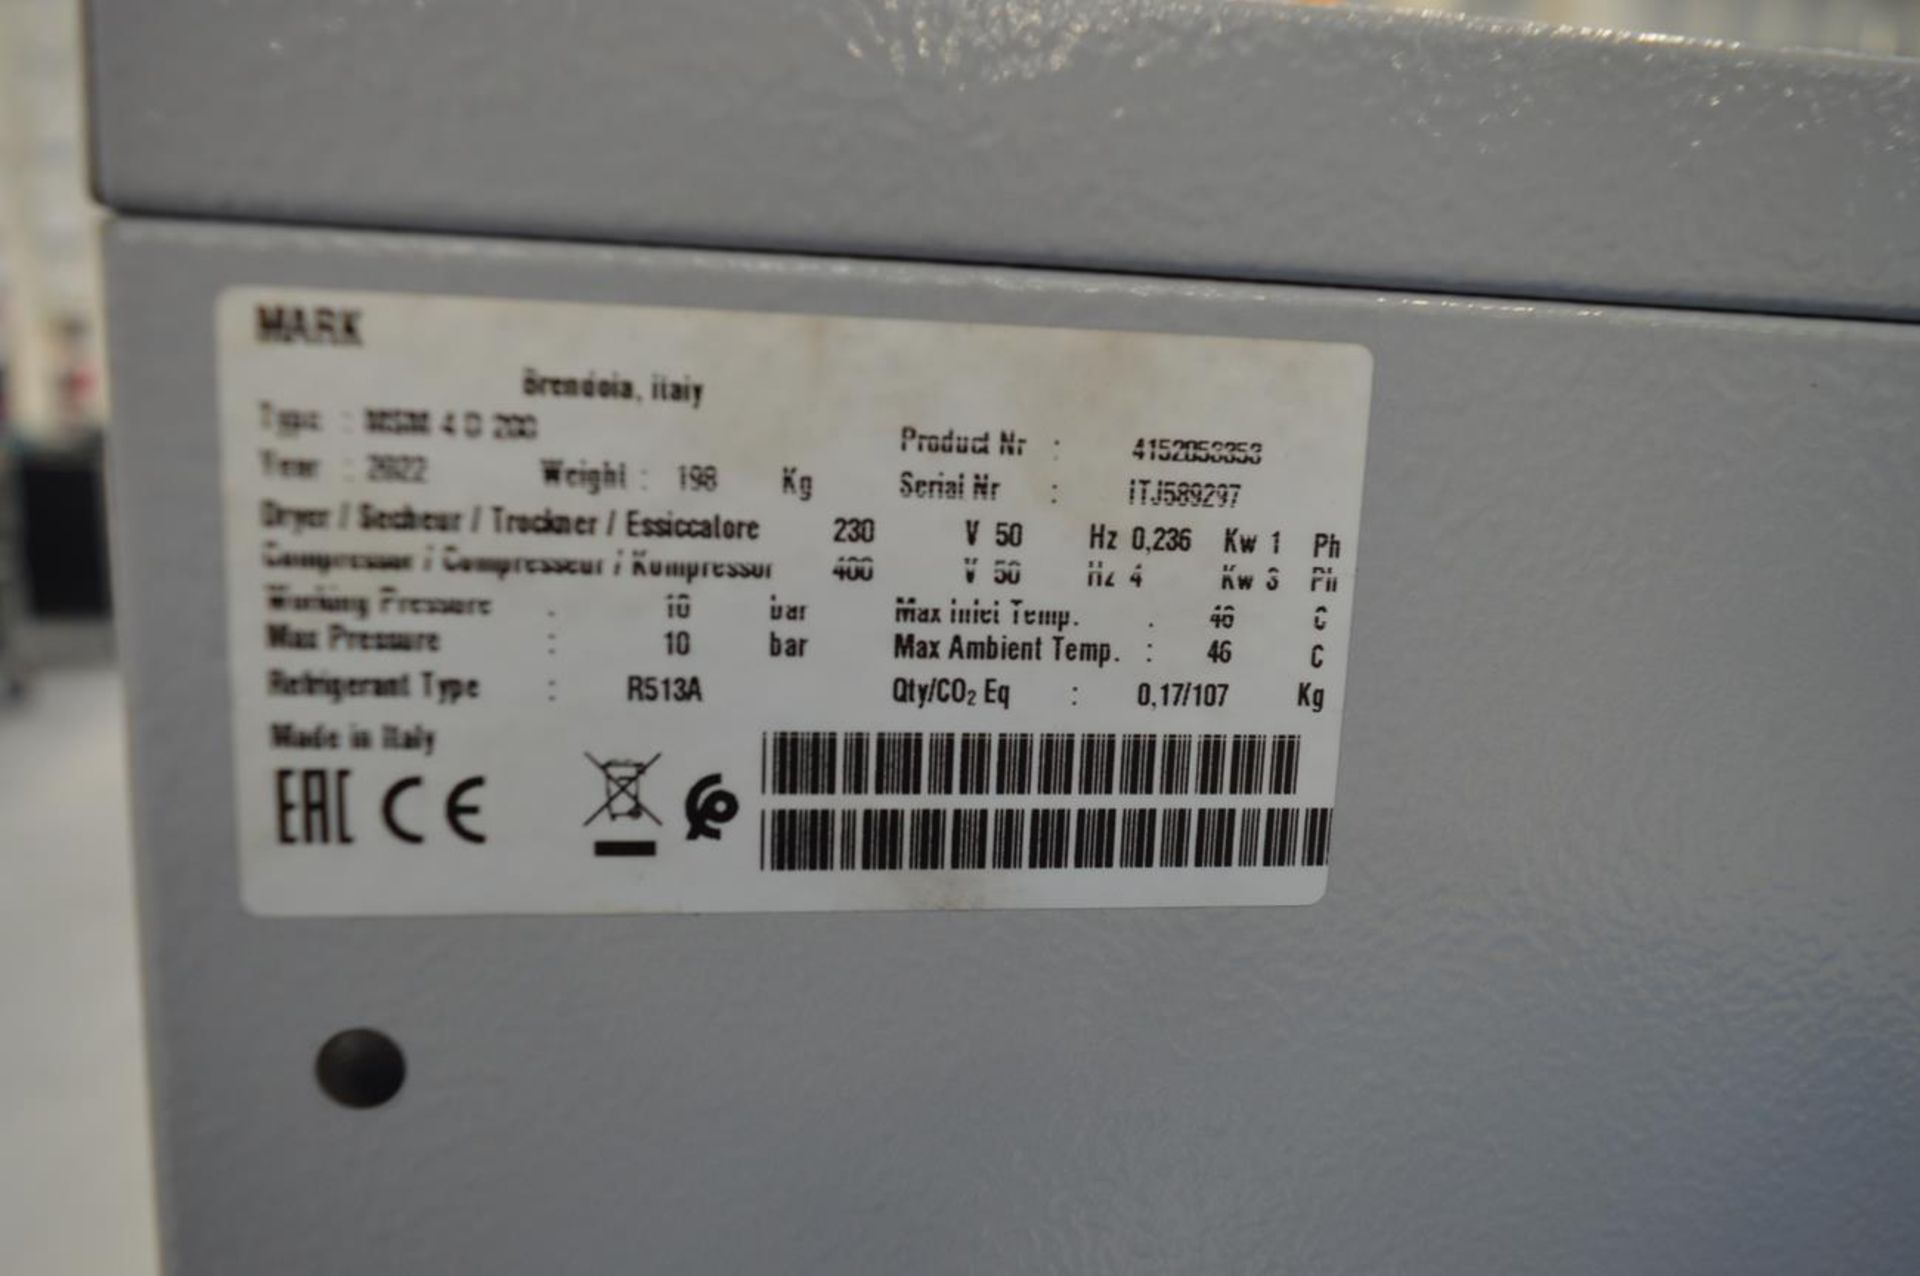 Mark, MSM4.D200 compressor, Serial No. ITJ589297 (DOM: 2022) - Image 5 of 5